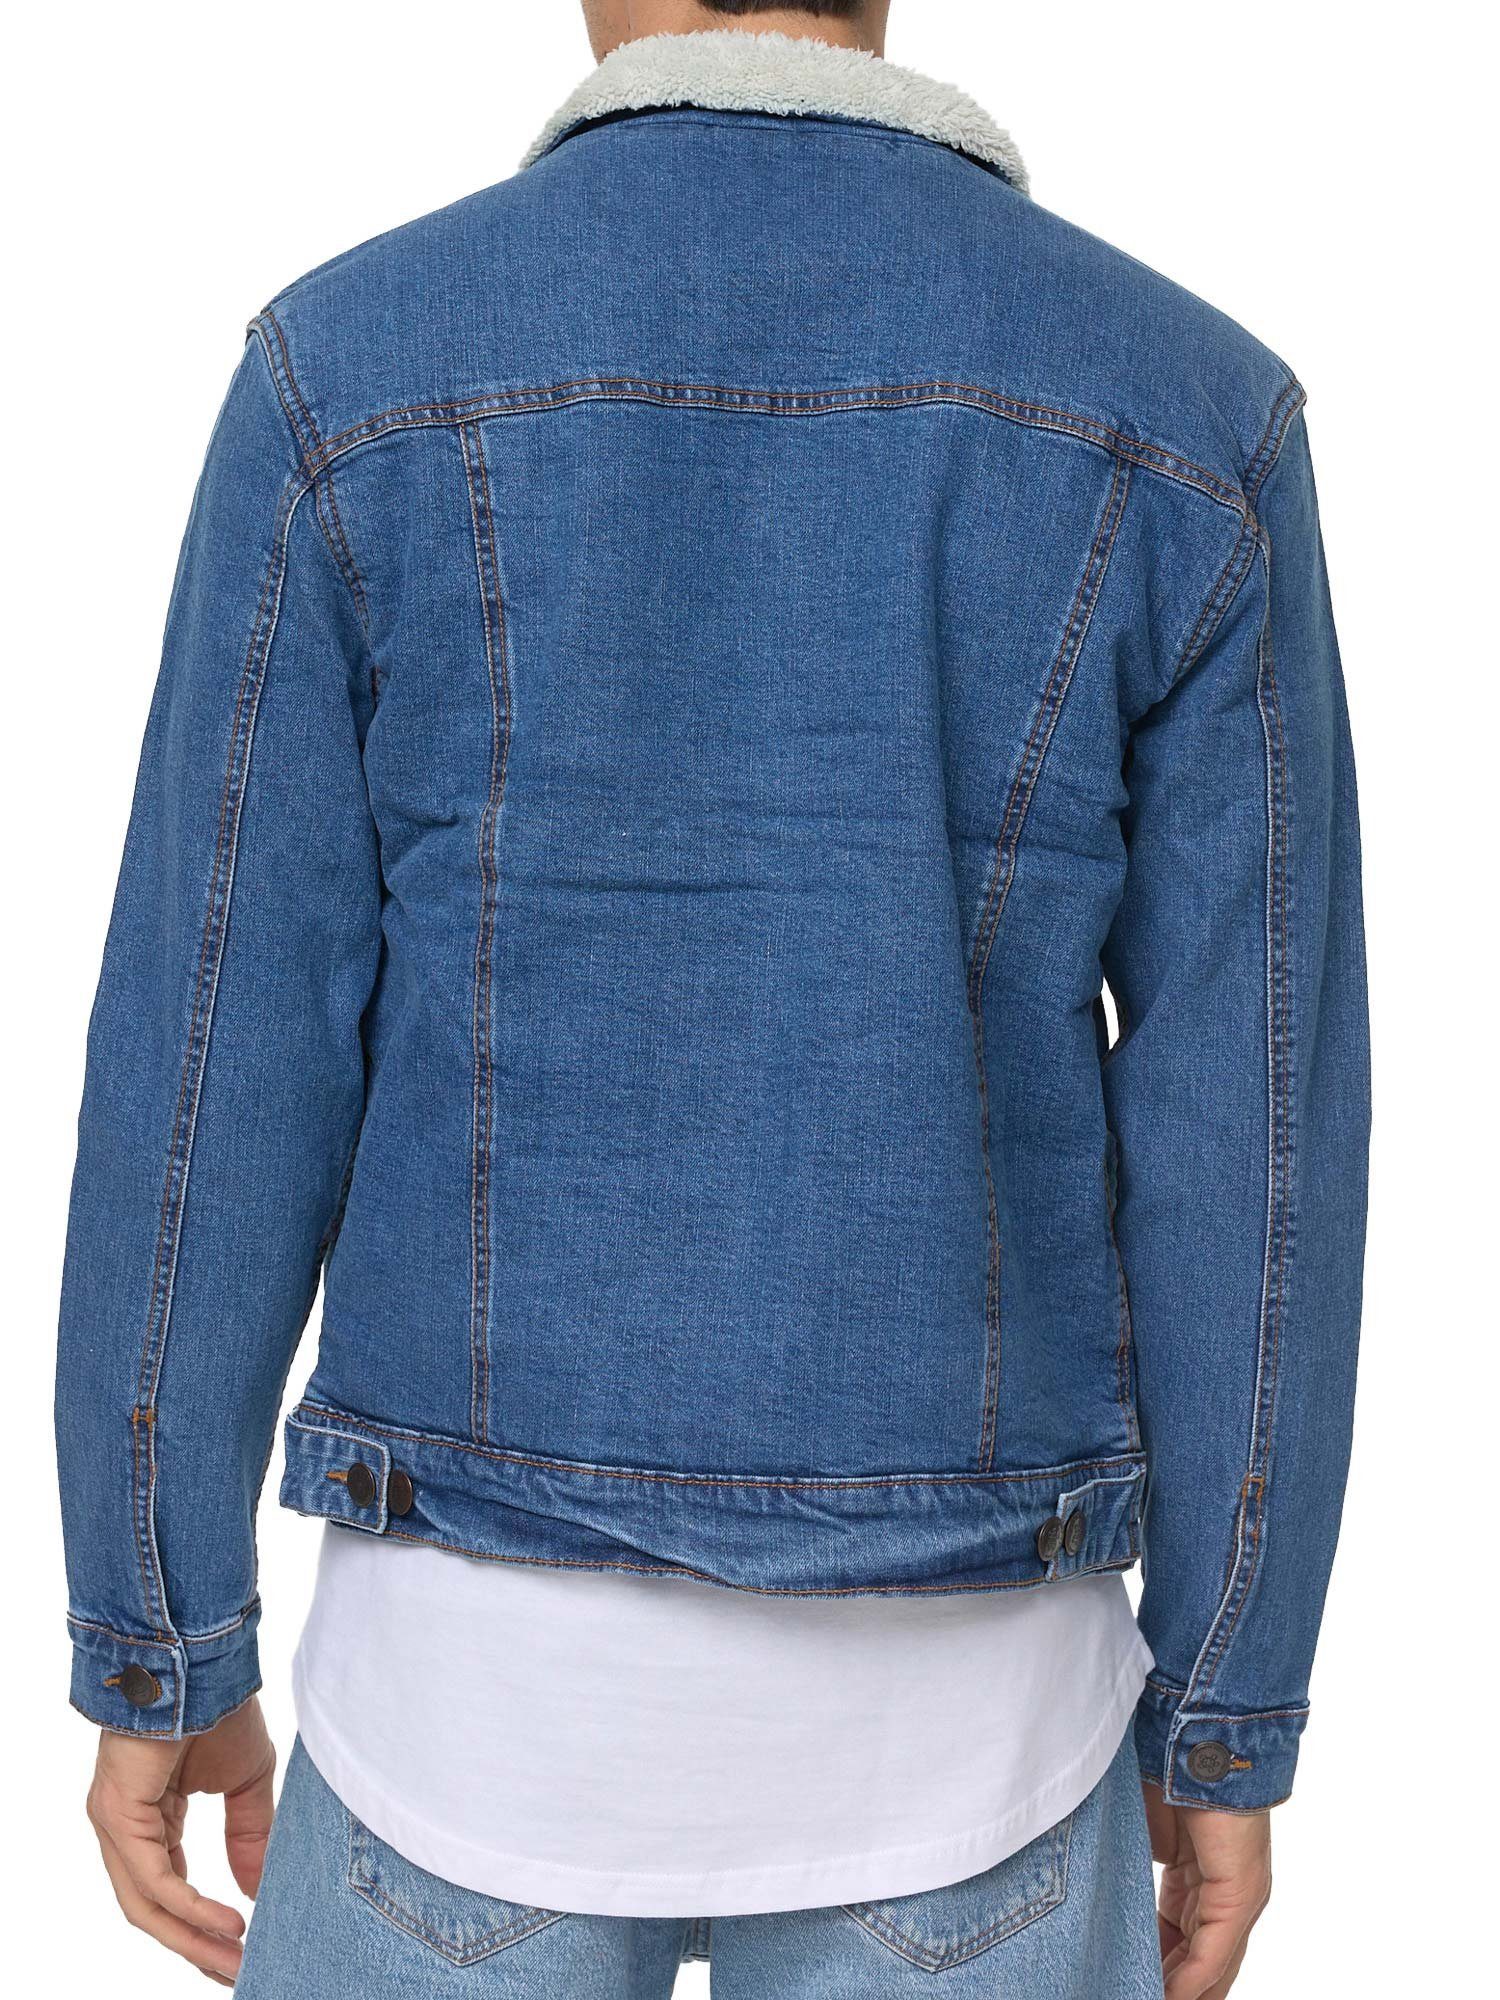 Tazzio Jeansjacke A400 Jeans mit Fellkragen Jacke blau